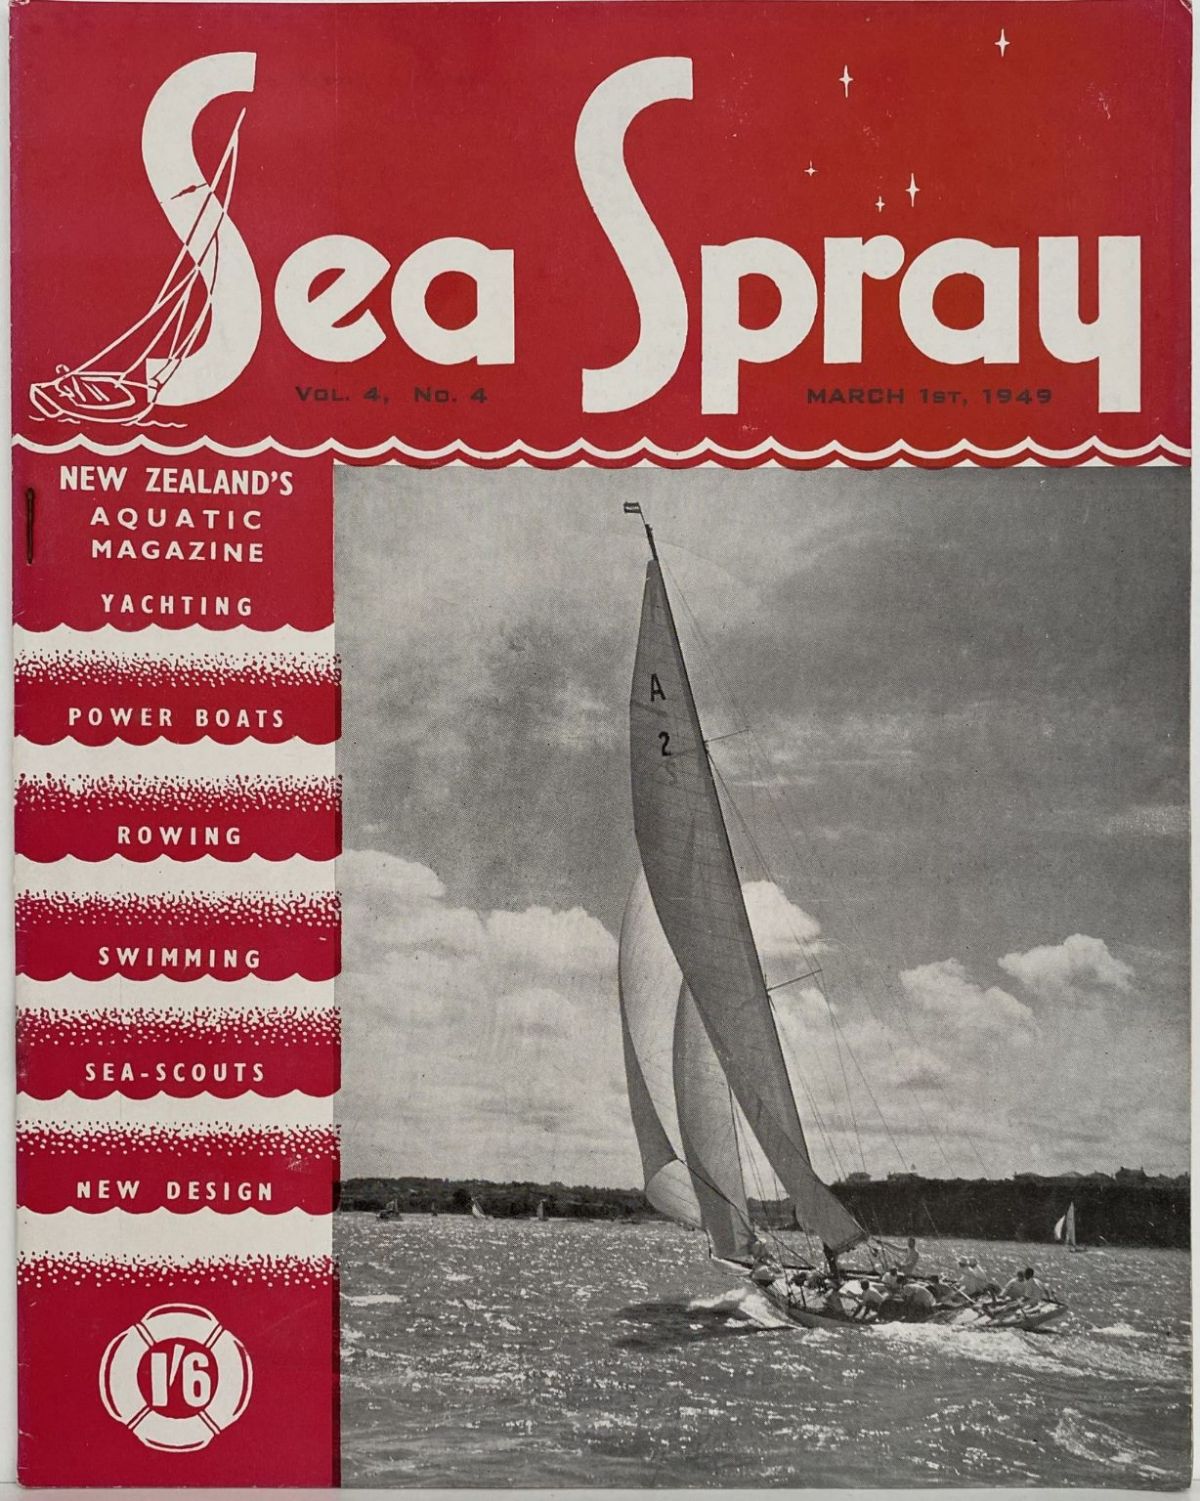 VINTAGE MAGAZINE: Sea Spray - Vol. 4, No. 4 - March 1949